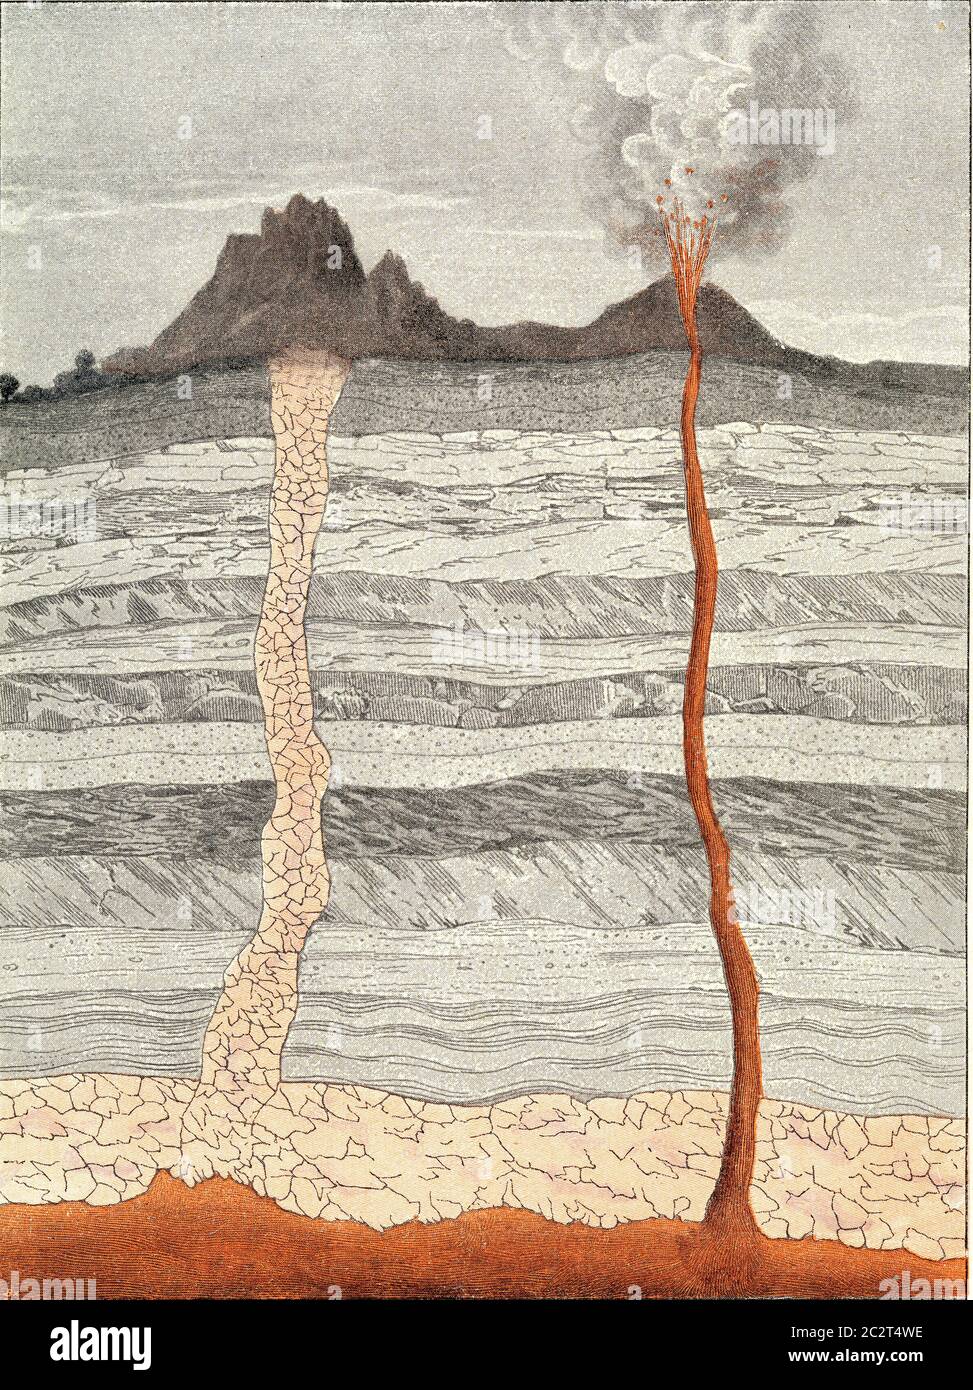 Coupe idéale de la croûte terrestre, illustration gravée d'époque. De l'Univers et de l'humanité, 1910. Banque D'Images